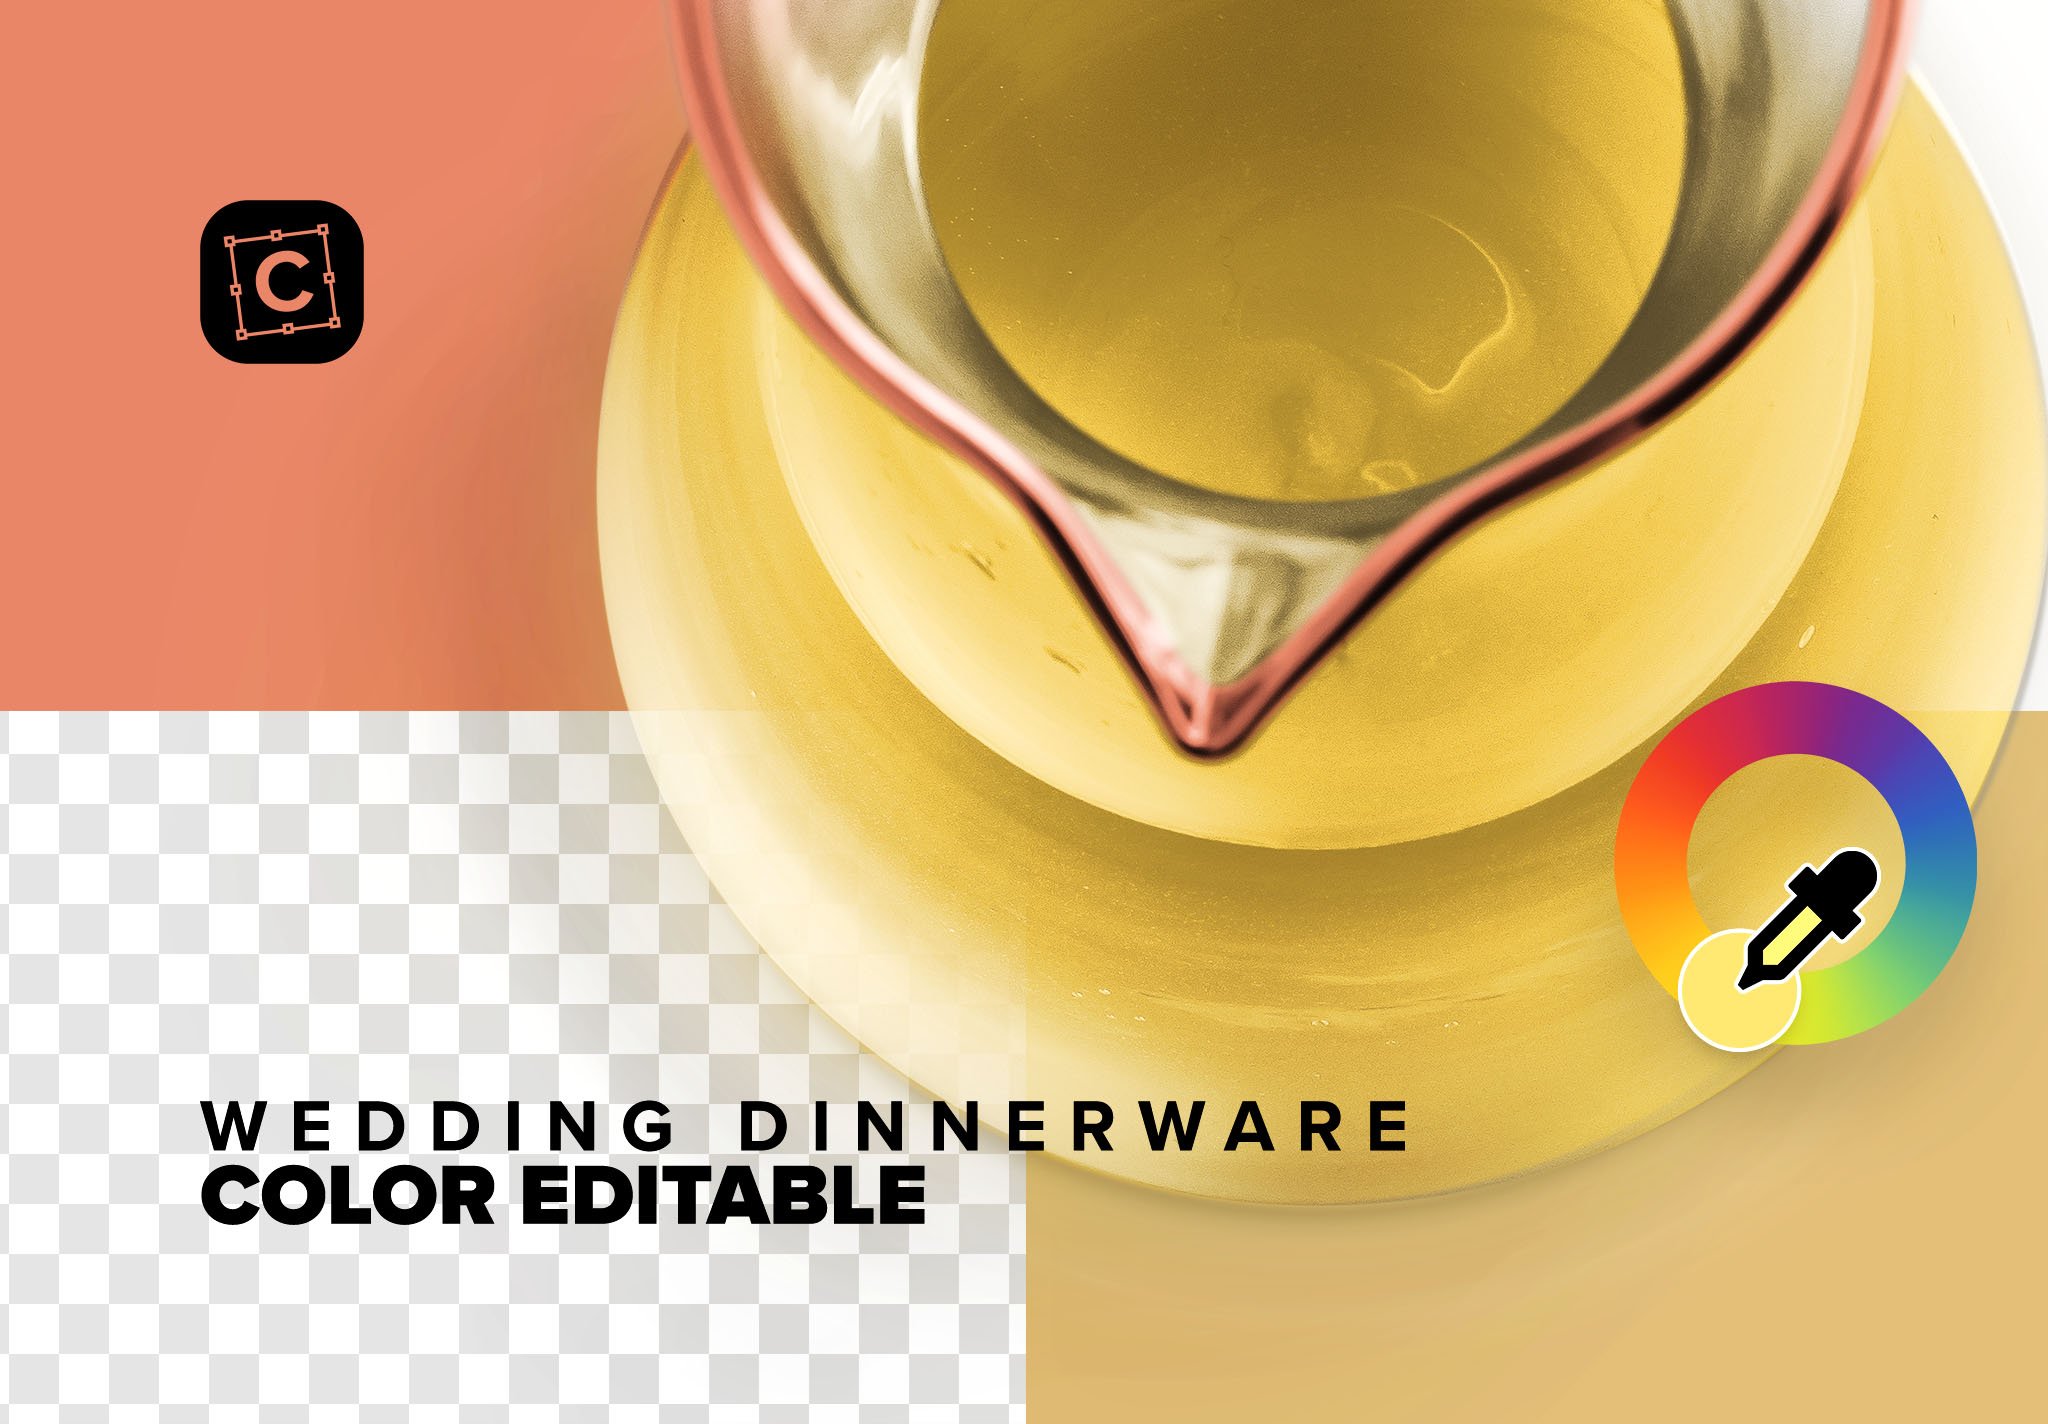 wedding dinnerware 04 item scene creator 106